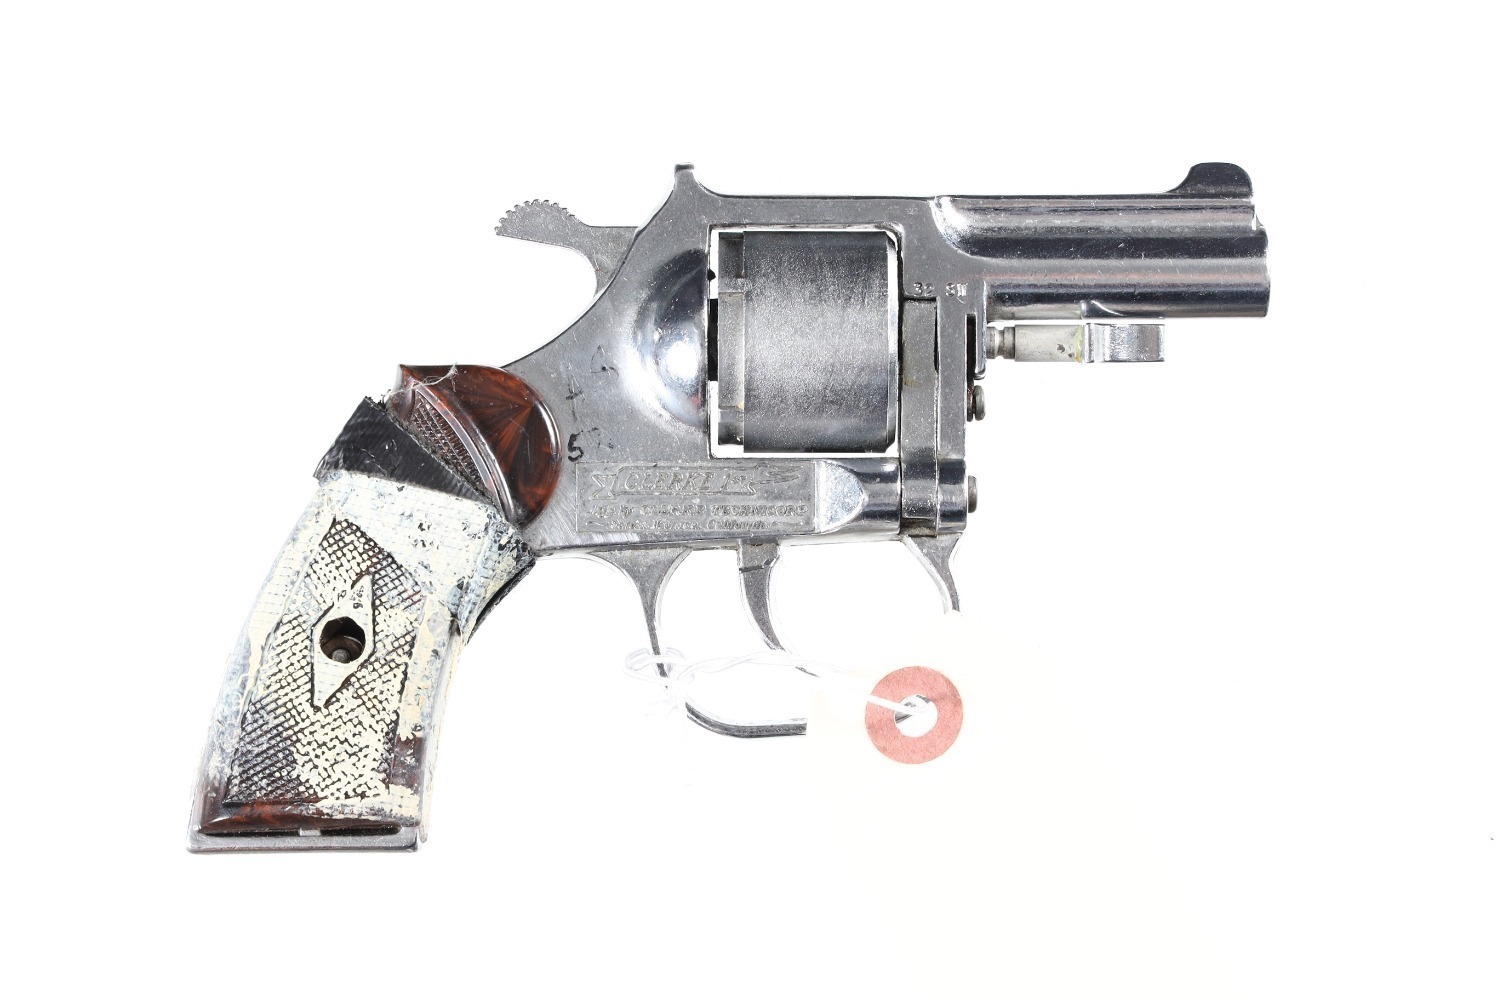 Clerke 1st Revolver .32 s&w